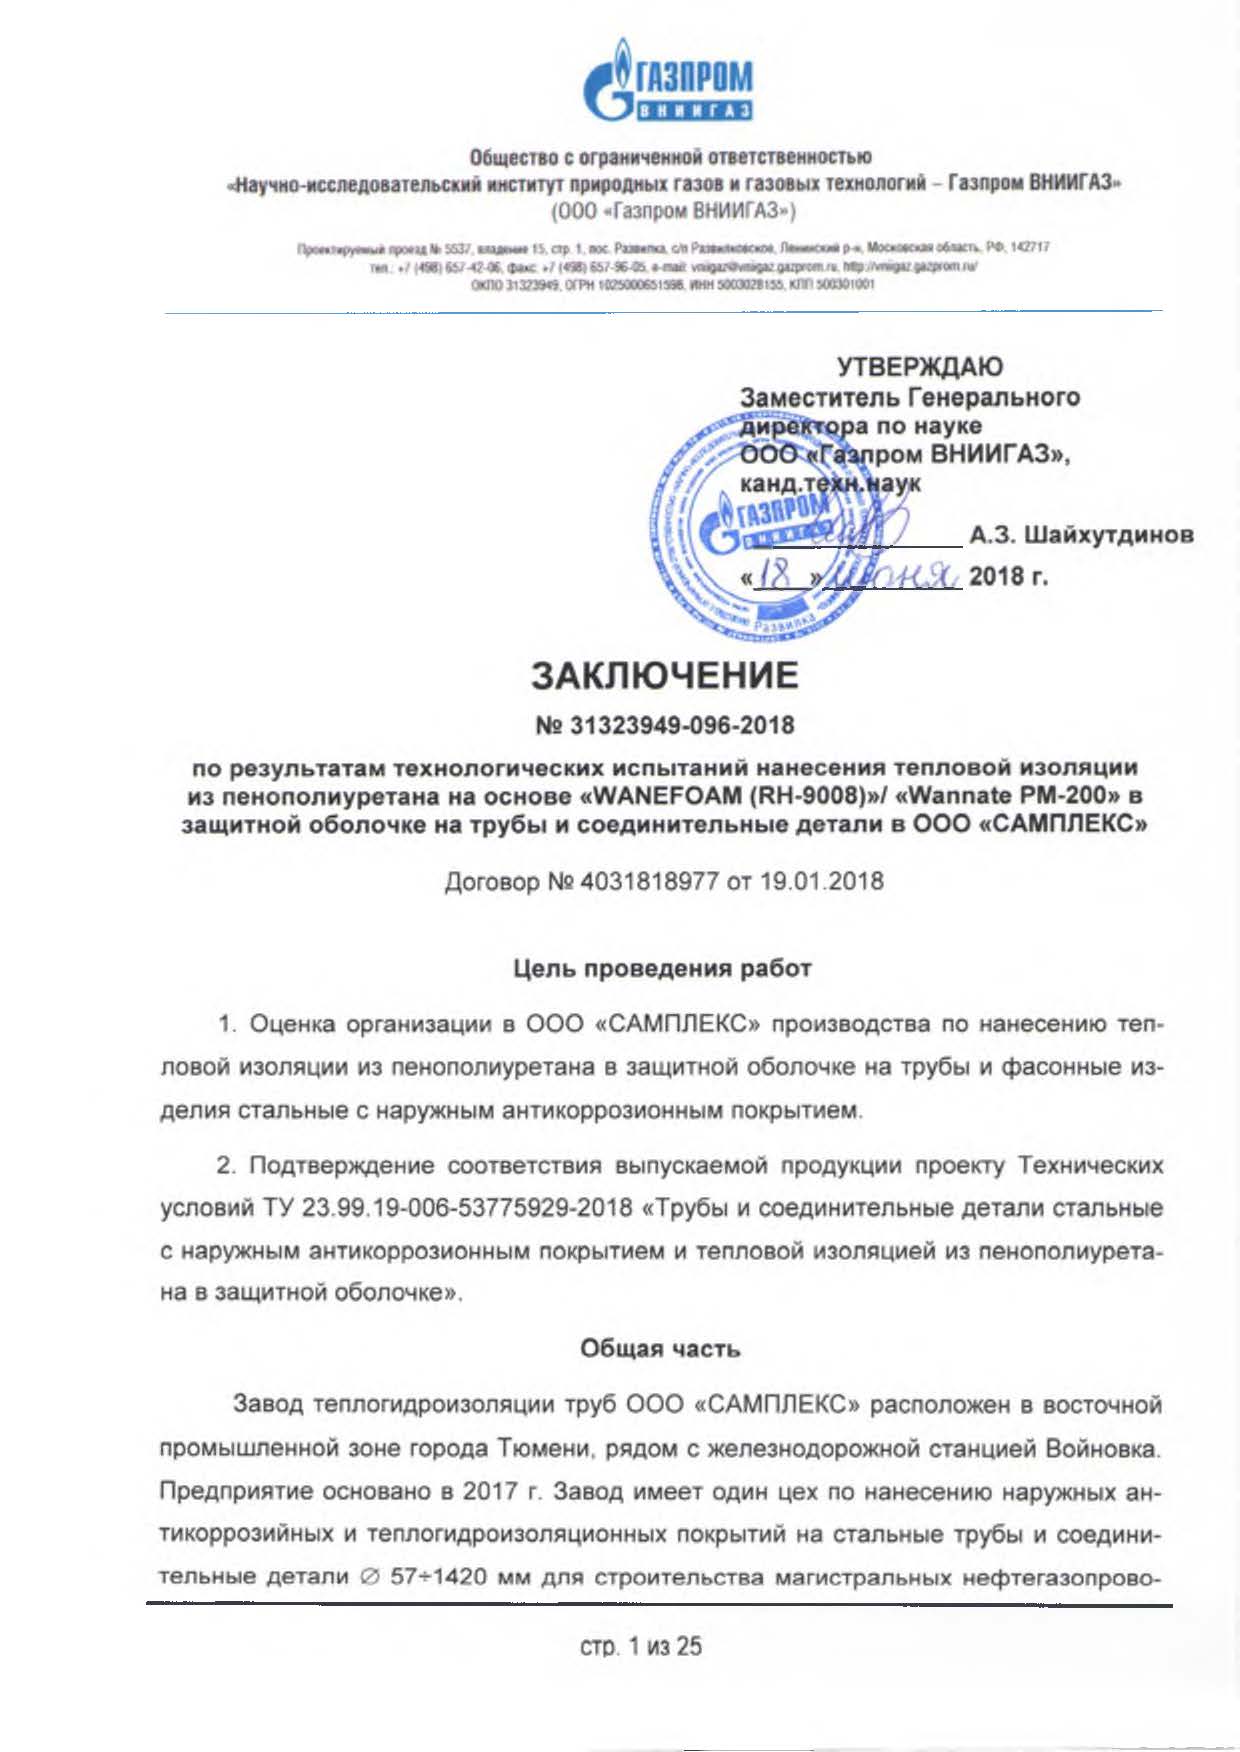 Заключение ООО Газпром ВНИИГАЗ ТУ 23.99.19-006-53775929-2018.jpg